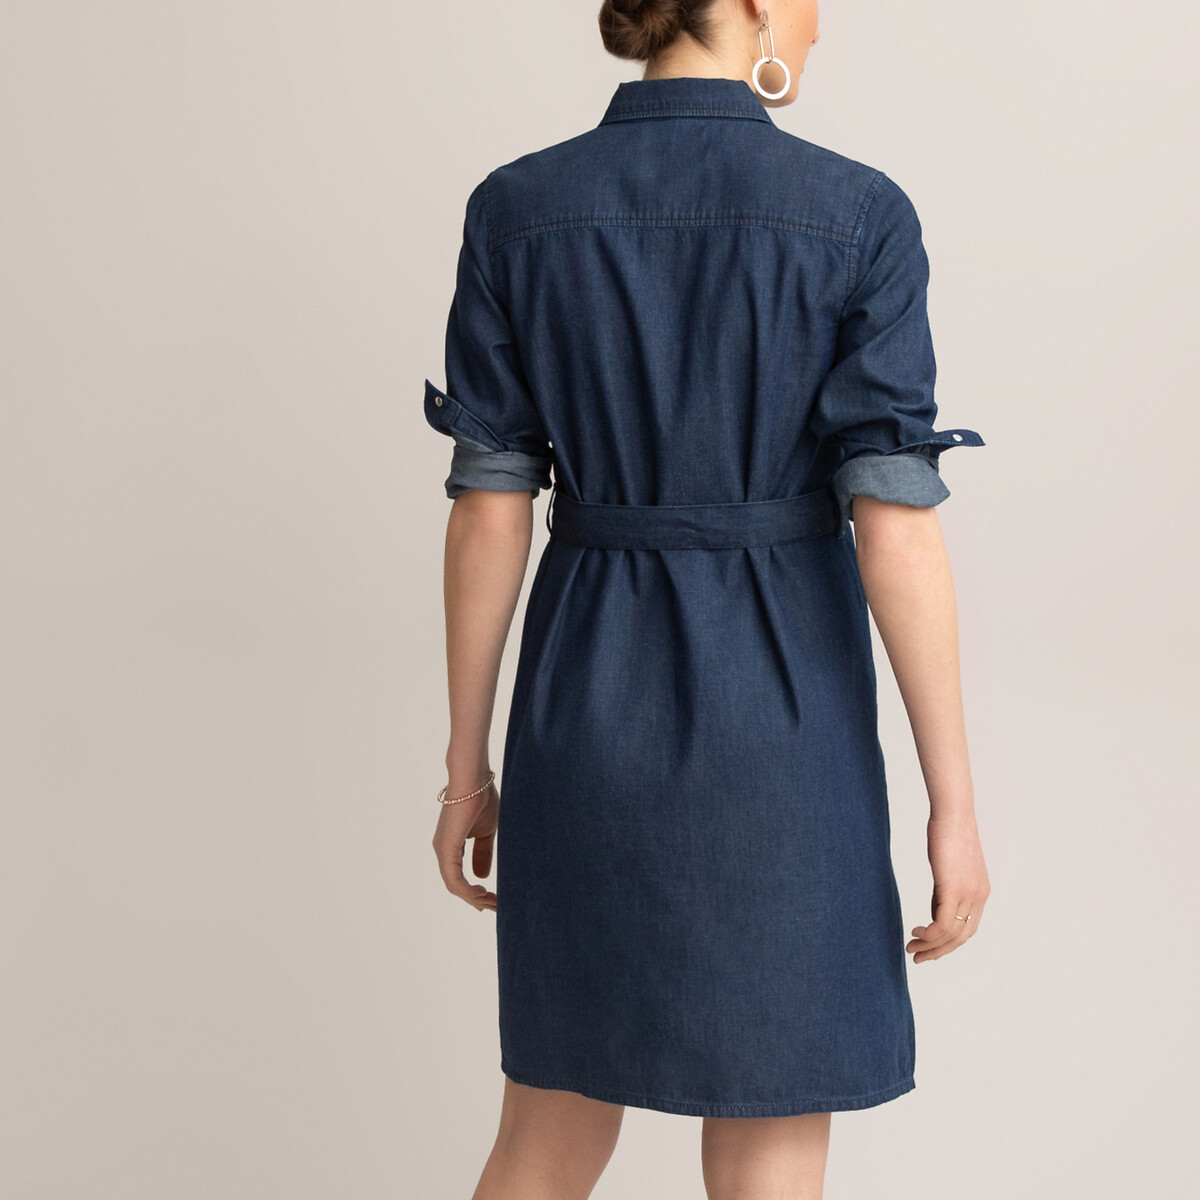 Платье-рубашка LaRedoute Для периода беременности из легкой джинсовой ткани 38 (FR) - 44 (RUS) синий, размер 38 (FR) - 44 (RUS) Для периода беременности из легкой джинсовой ткани 38 (FR) - 44 (RUS) синий - фото 4